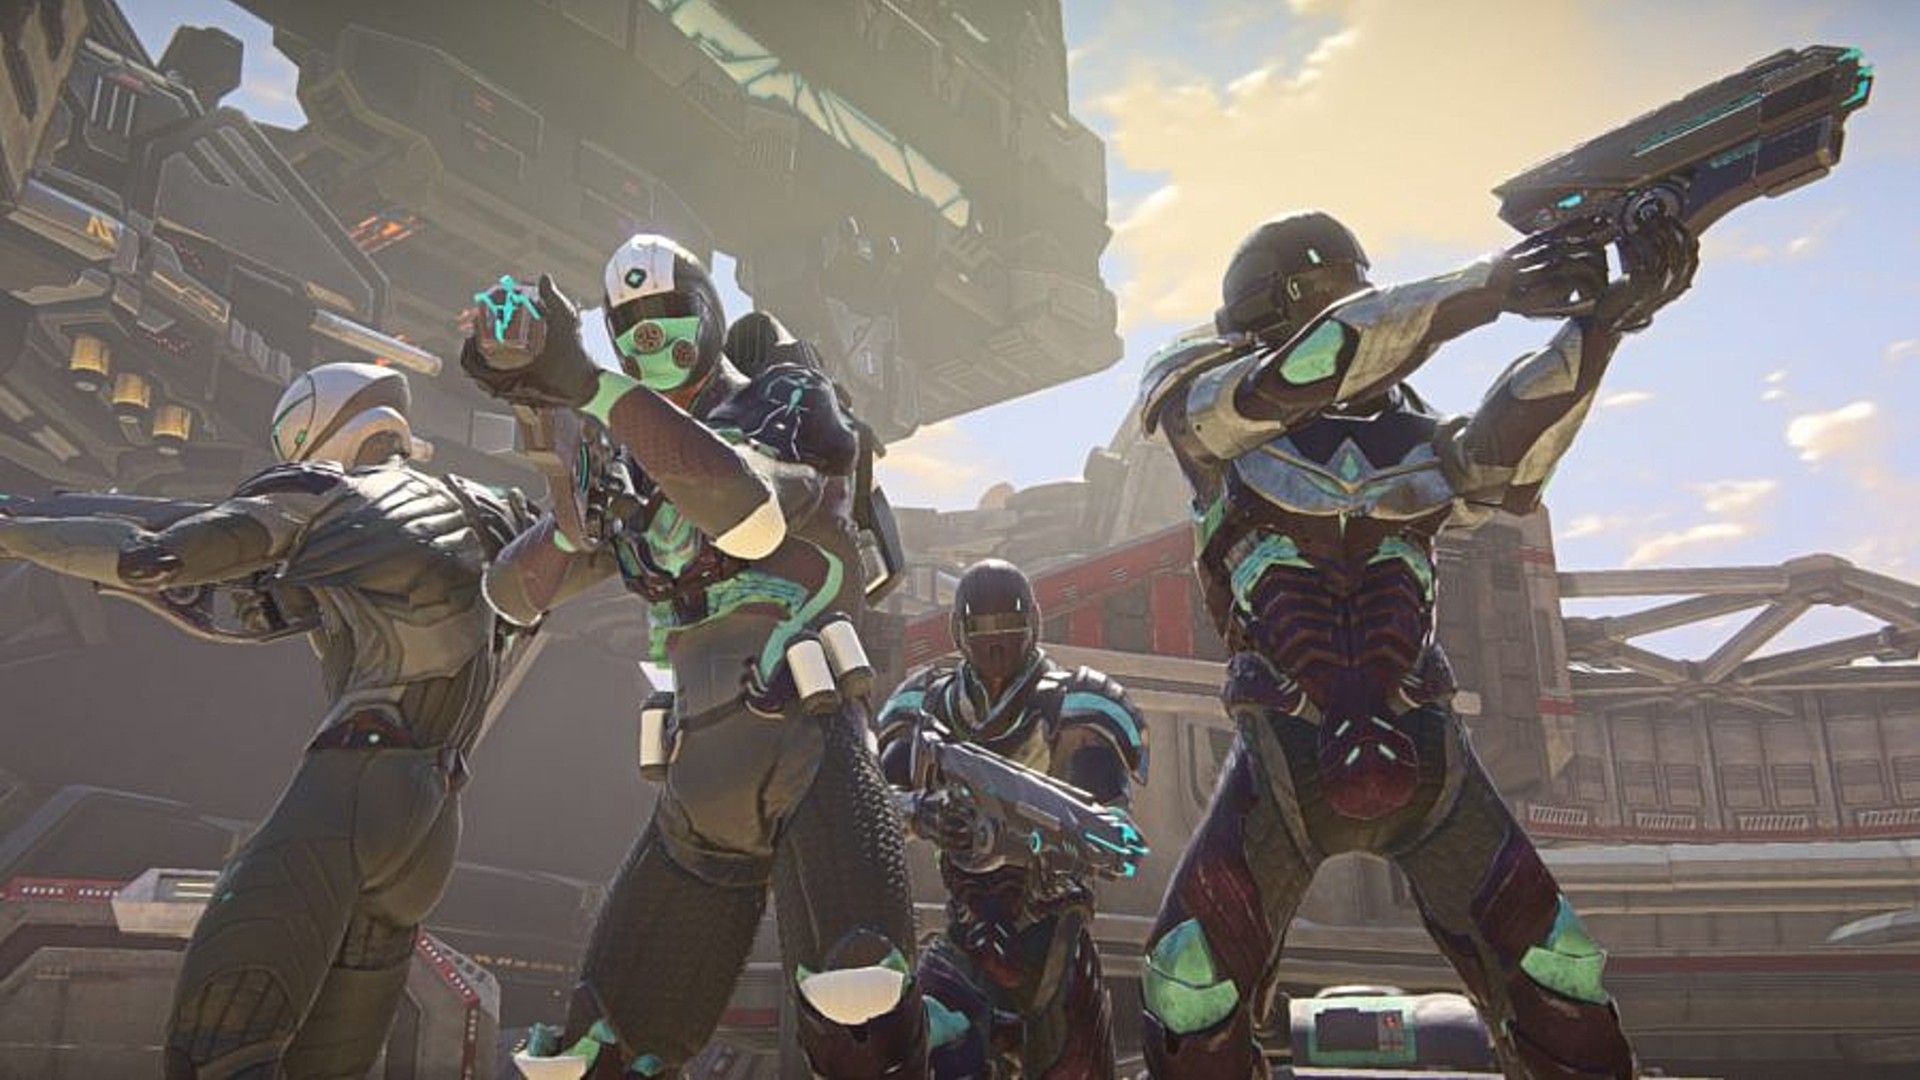 Los mejores juegos gratuitos para PC: Planetside 2. La imagen muestra un grupo de cuatro soldados armados de aspecto futurista.